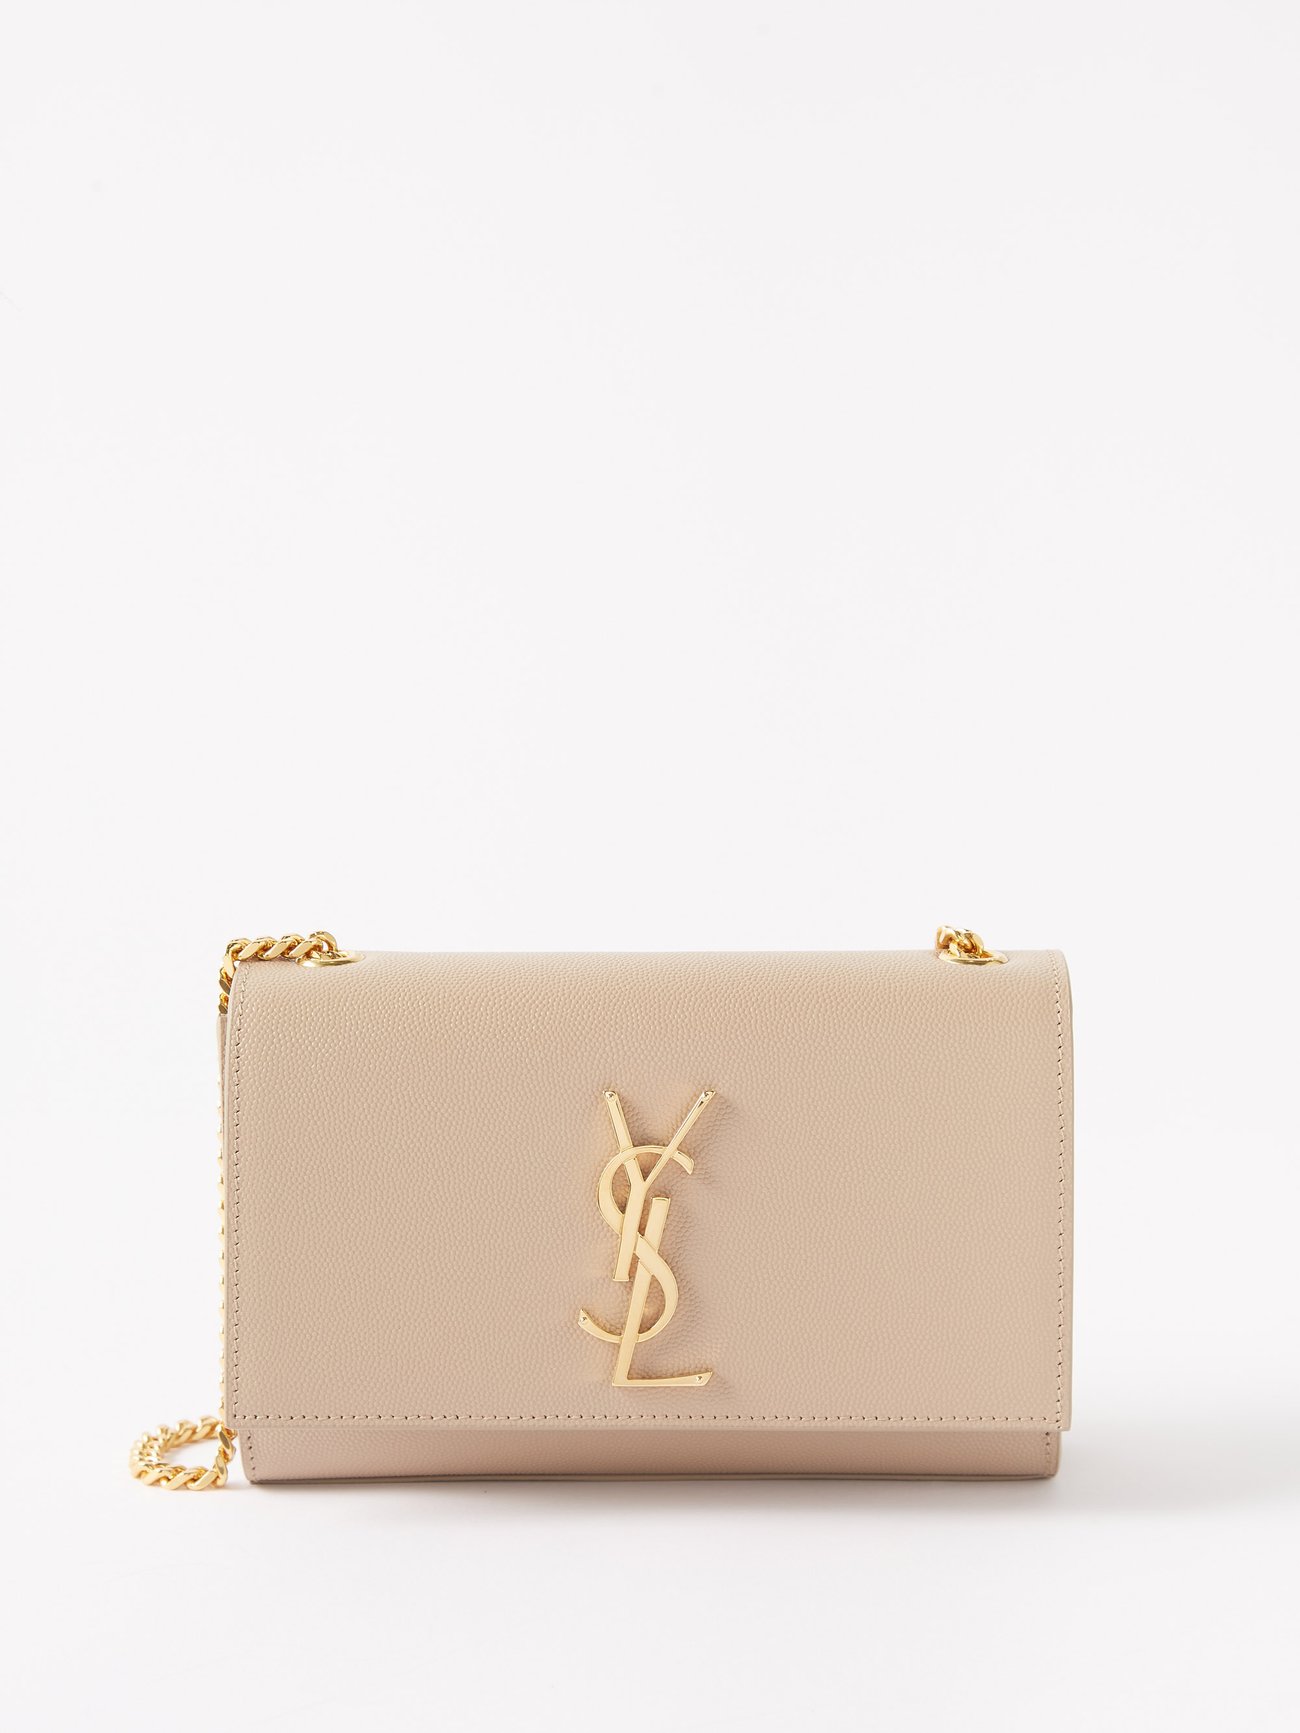 Saint Laurent Nude Grain De Poudre Small Kate Bag - Shop YSL Handbags